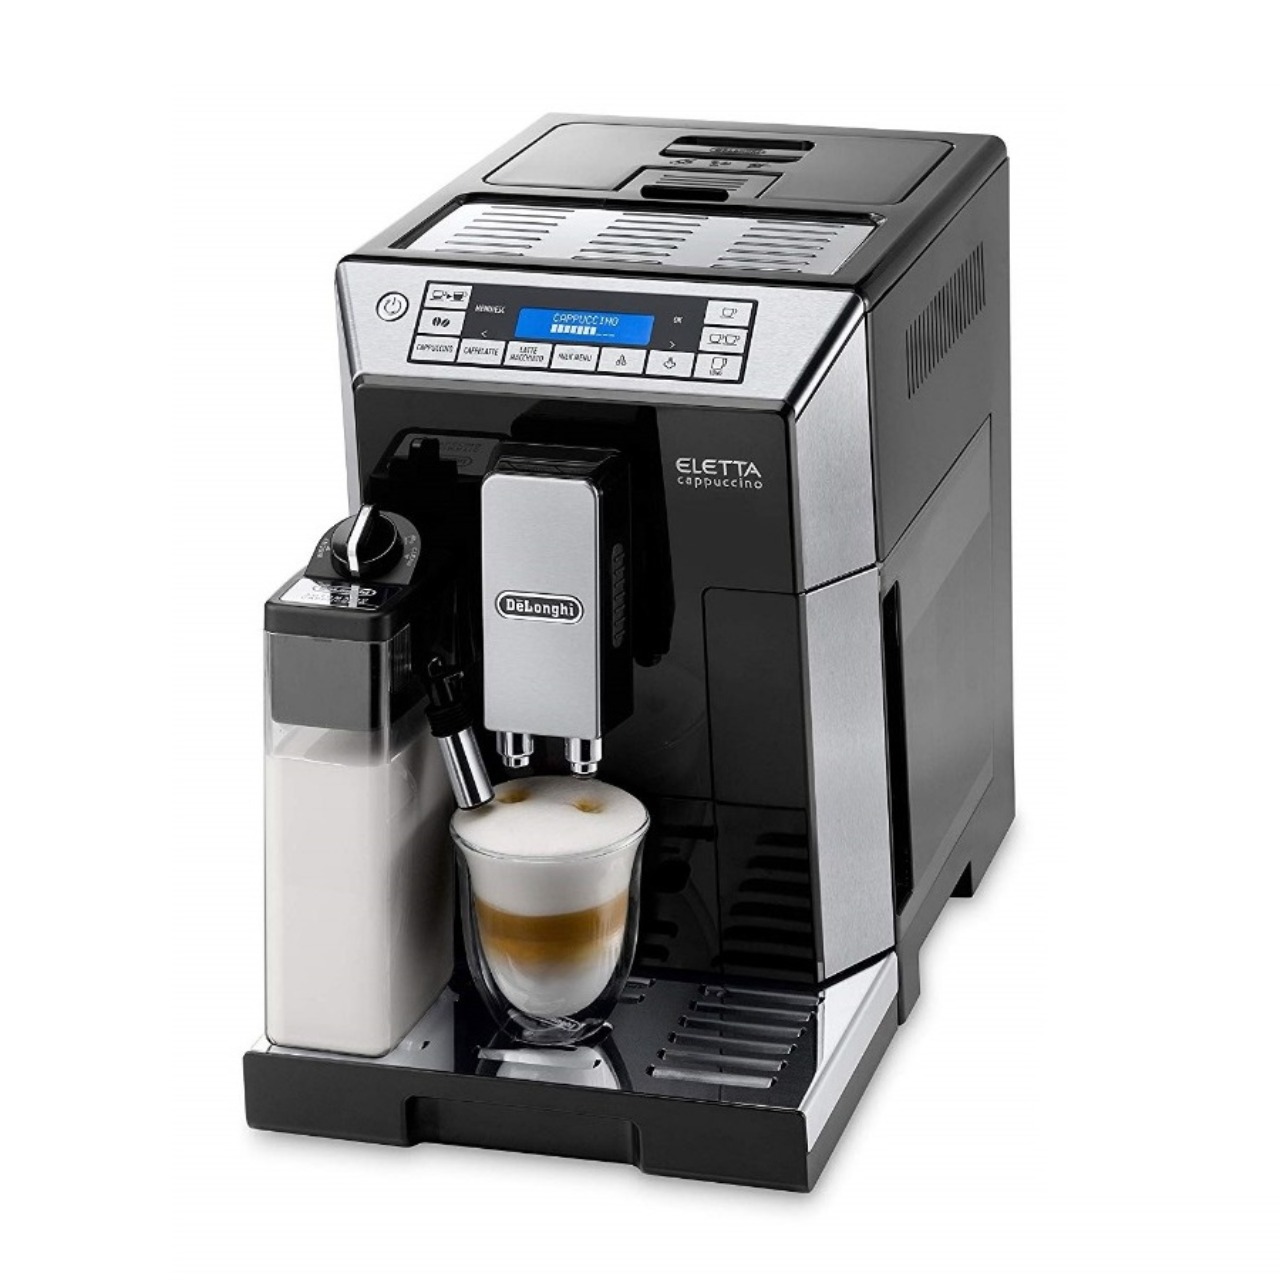 デロンギエレッタカプチーノトップECAM45760B全自動コーヒーマシン